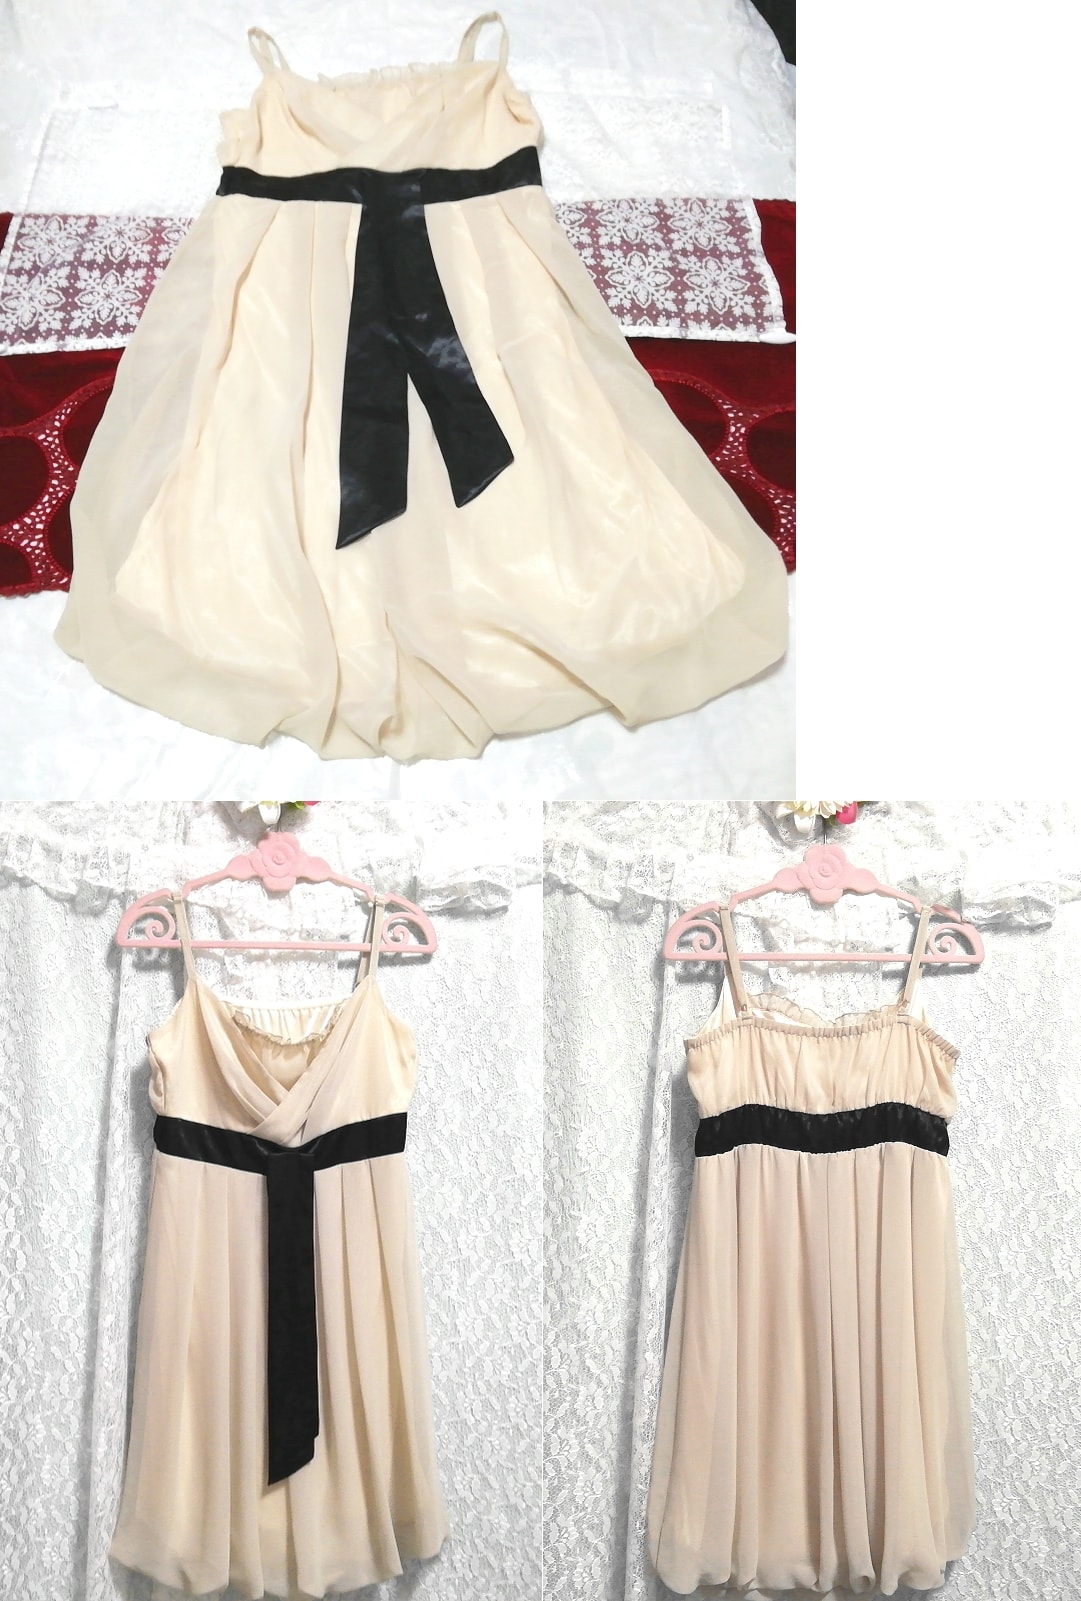 꽃무늬 화이트 블랙 벨트 네글리제 나이트가운 캐미솔 원피스 쉬폰 드레스, 무릎길이 스커트, m 사이즈